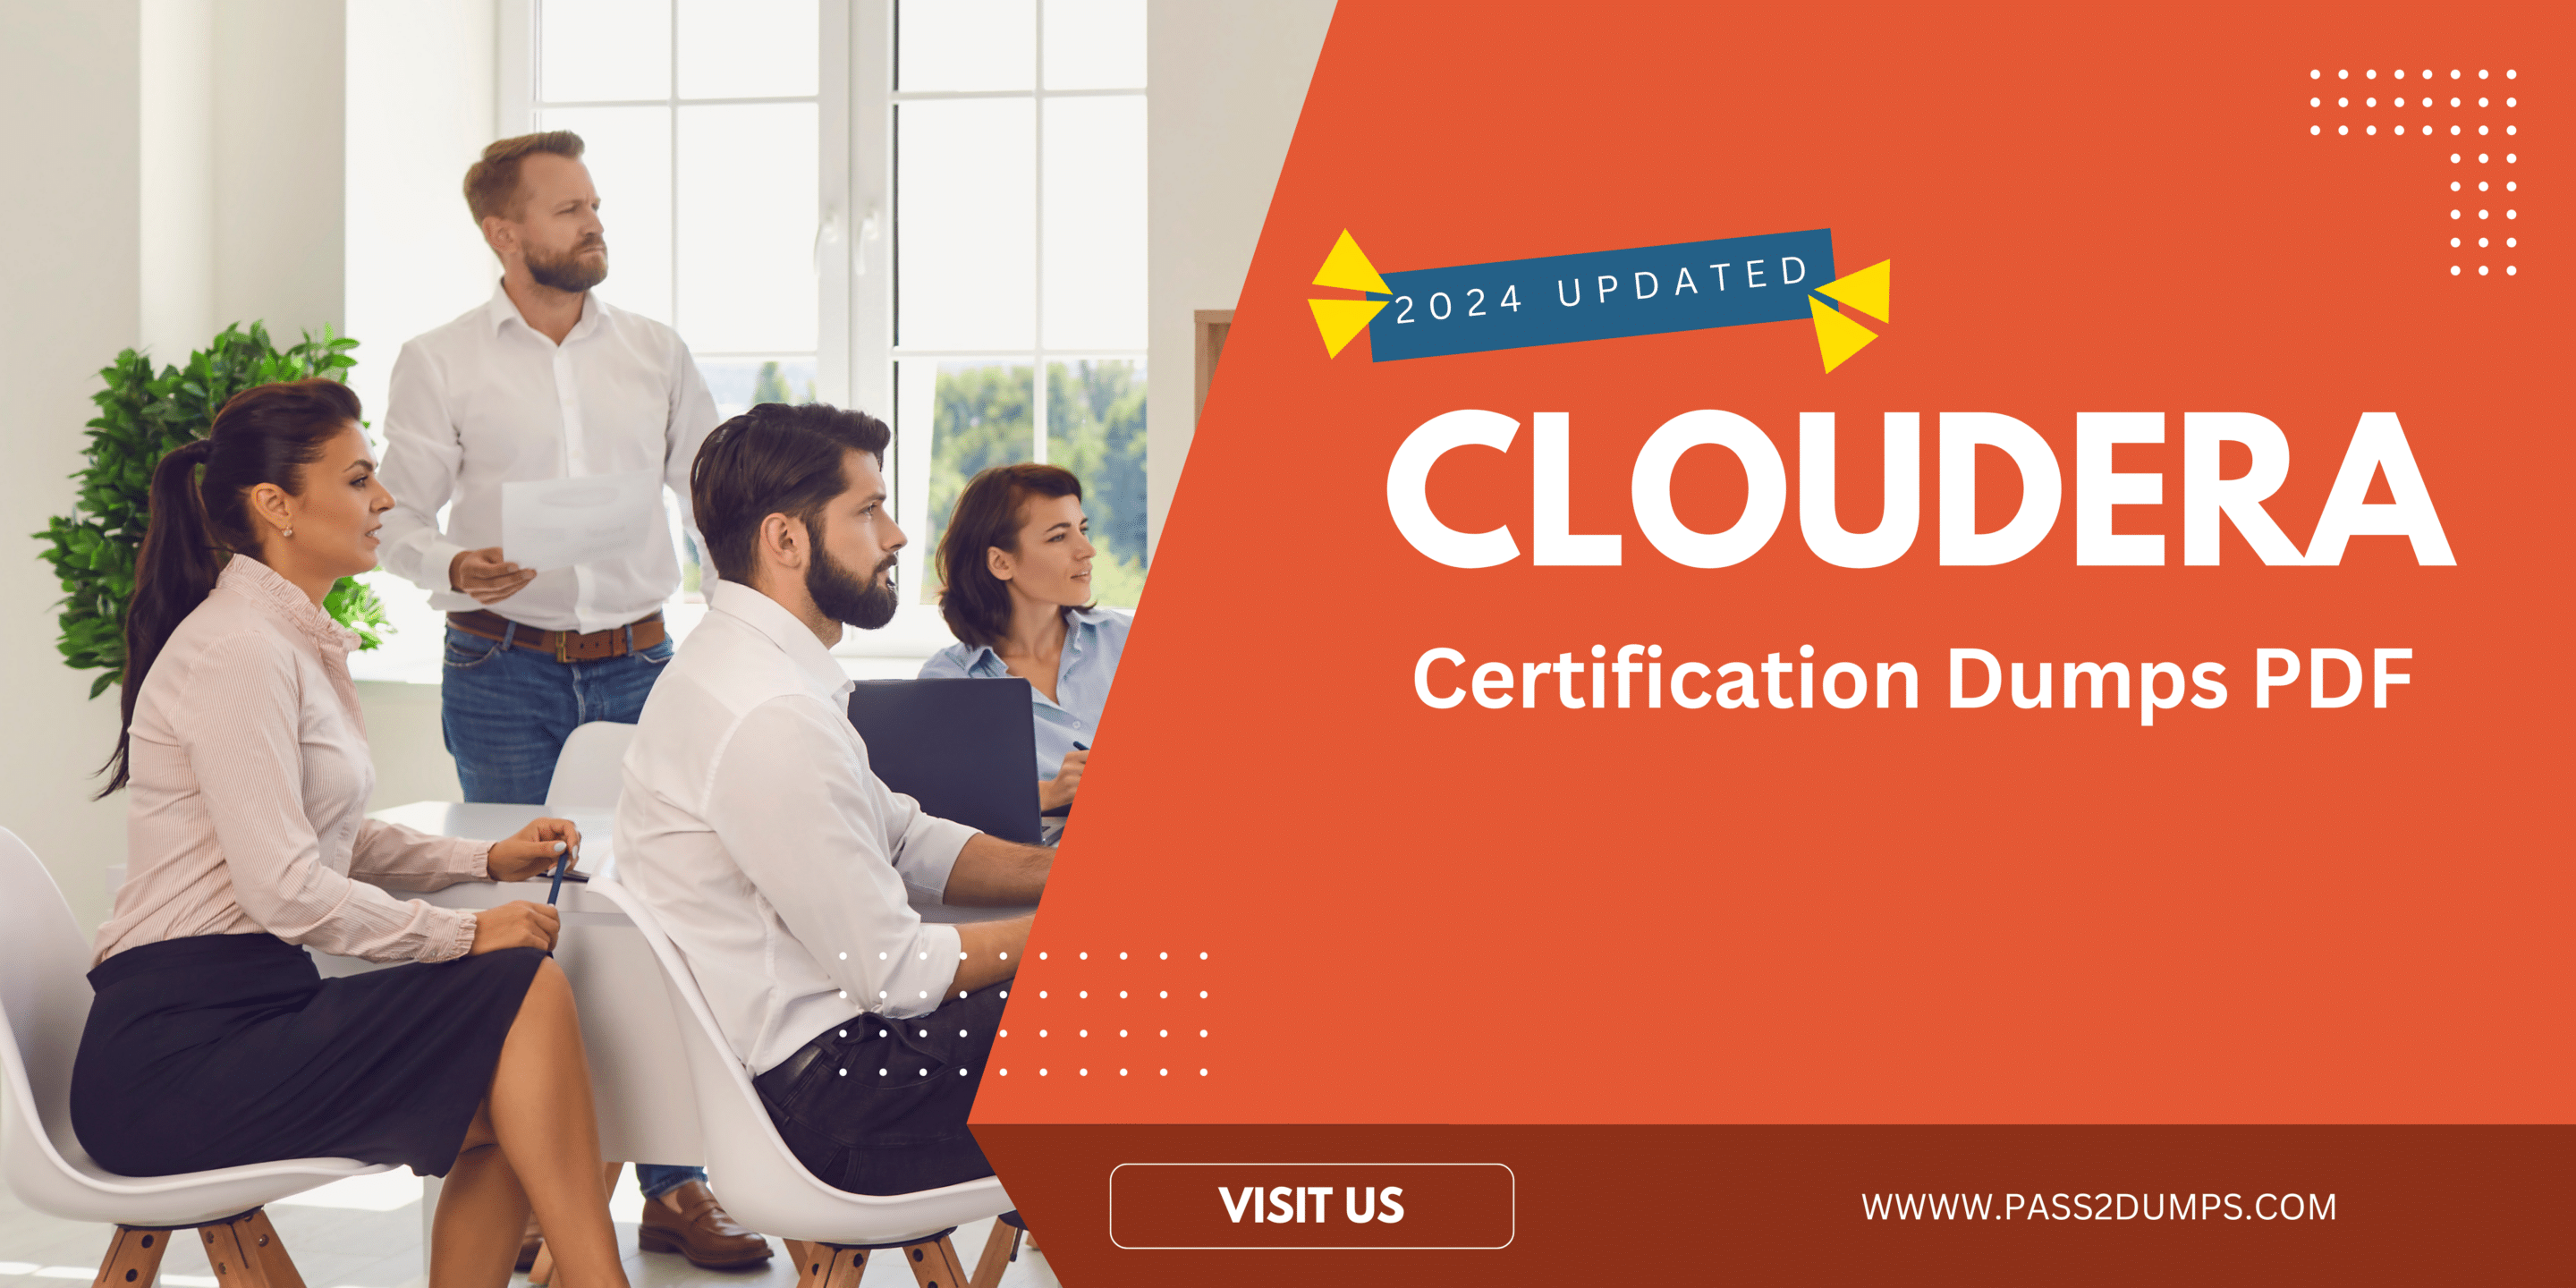 Cloudera Certification Dumps PDF